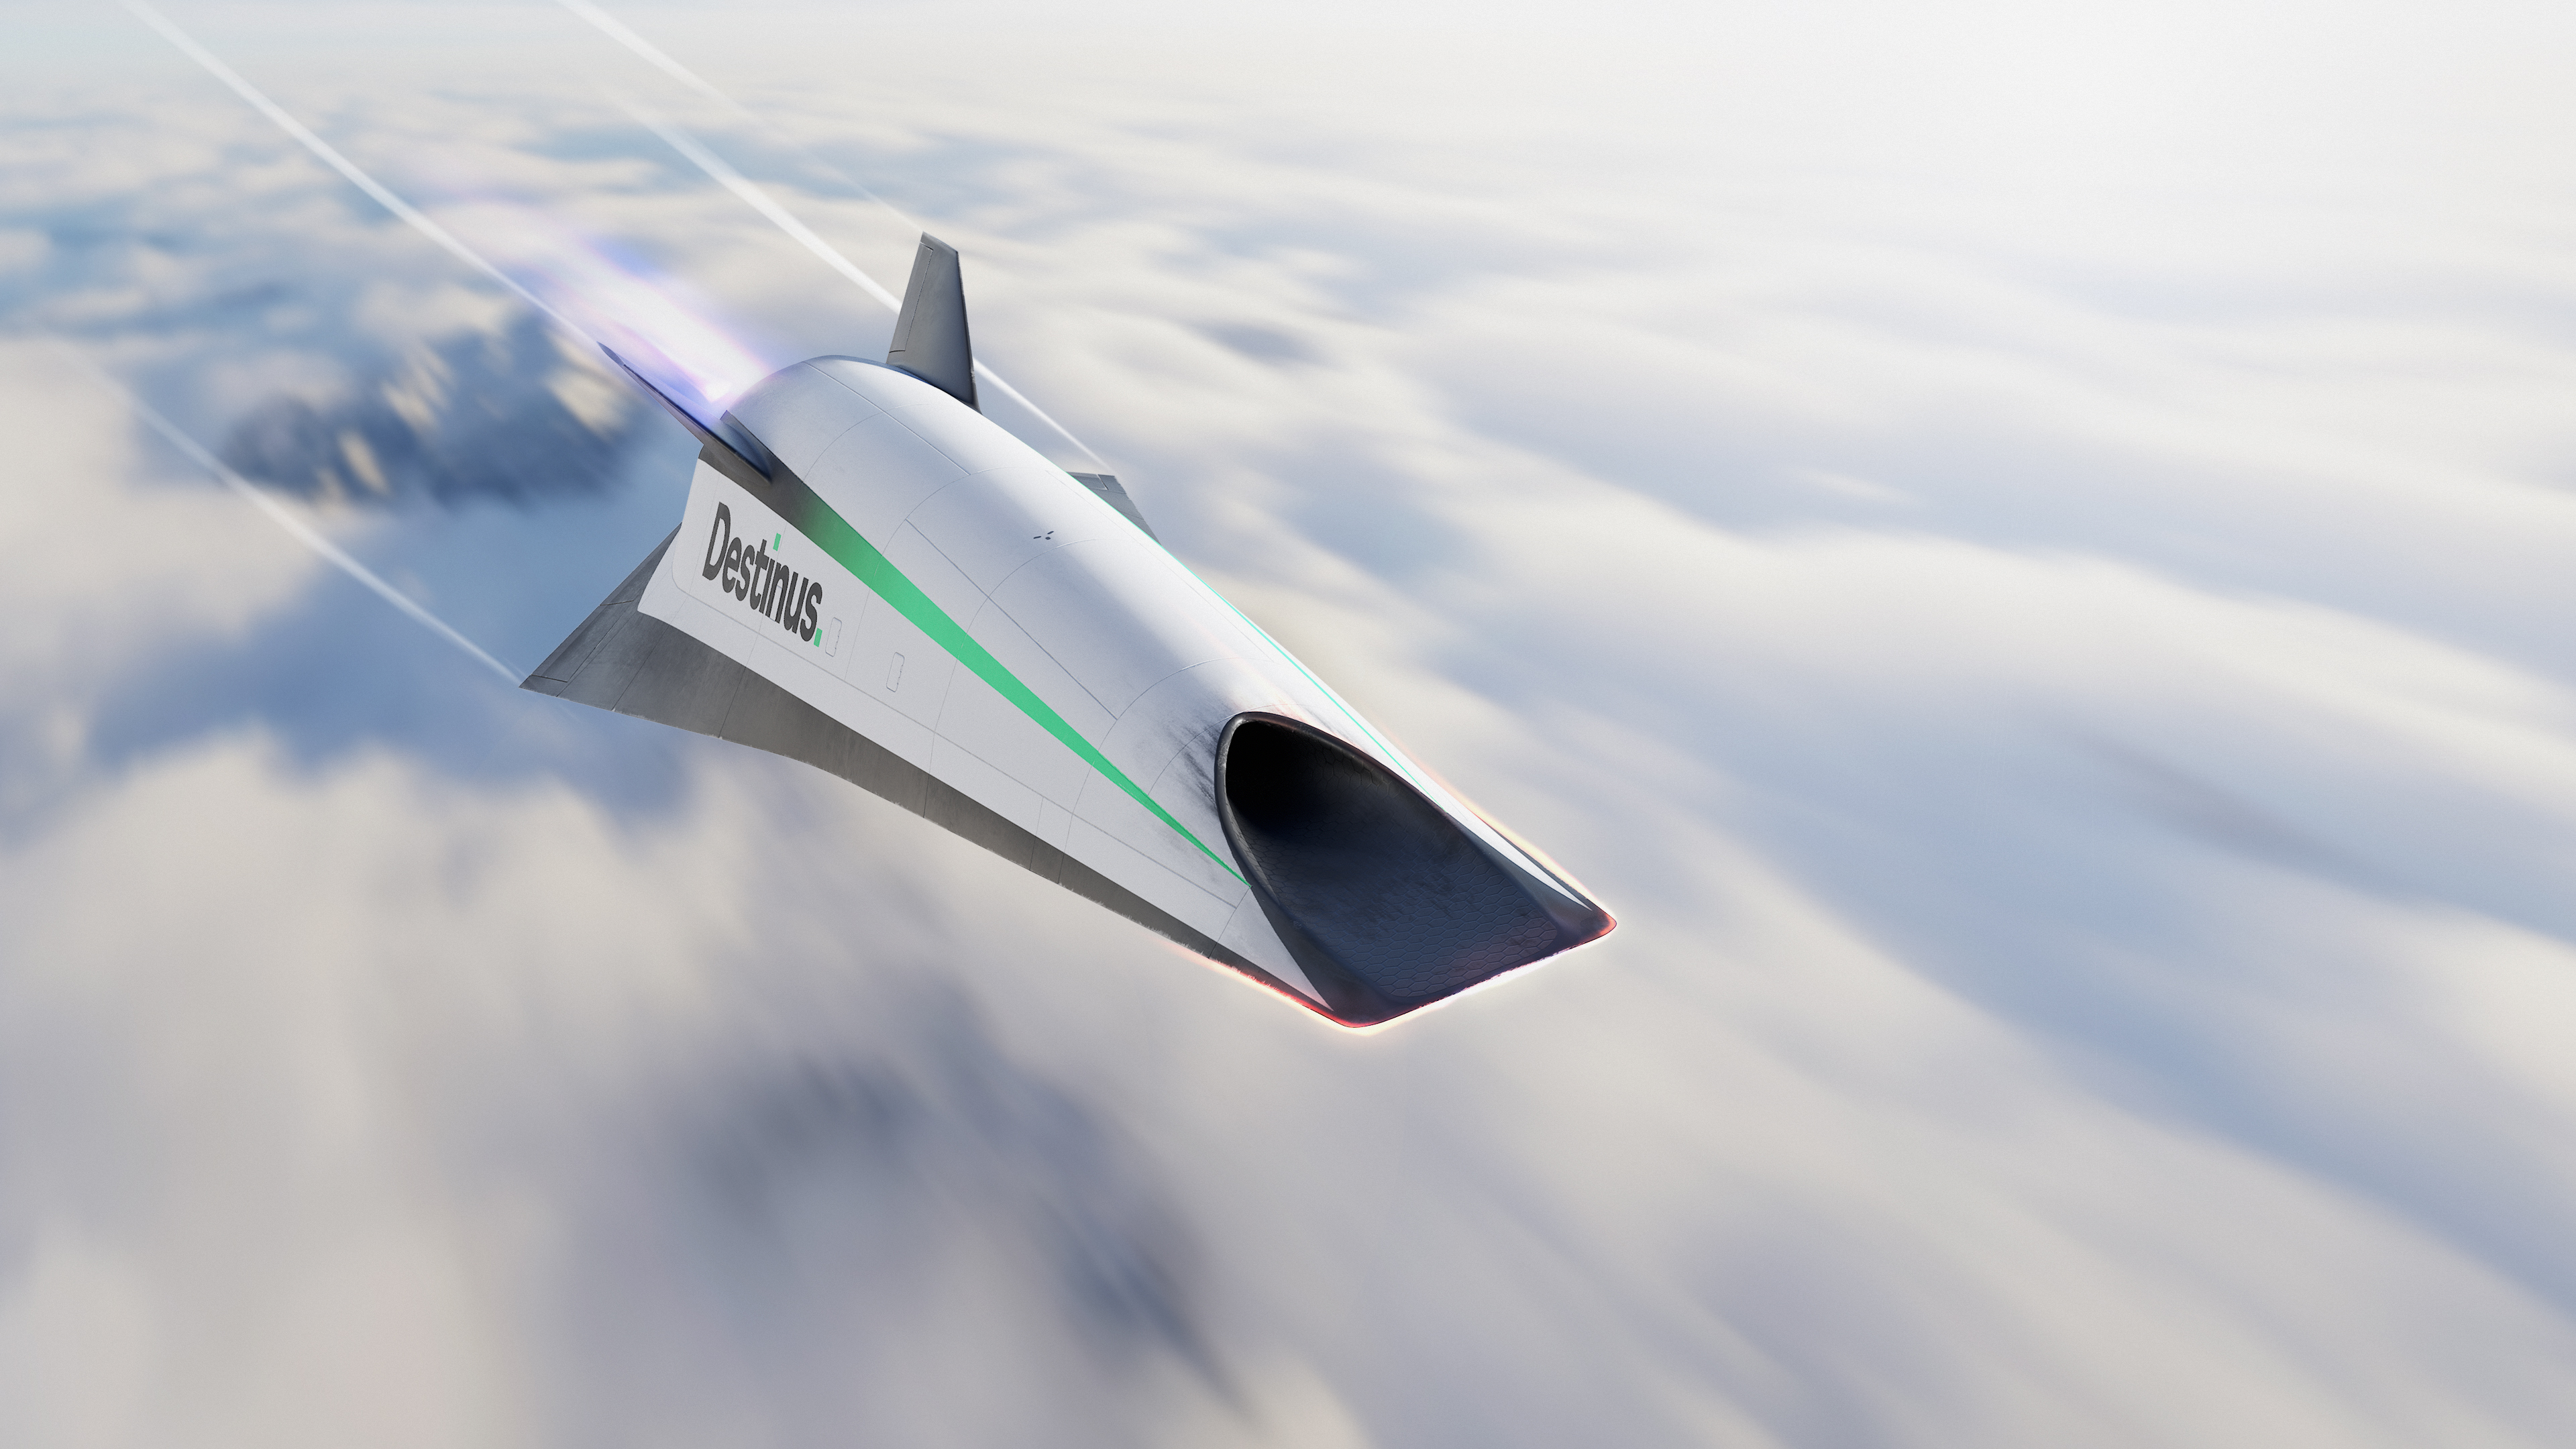 hypersonic hydrogen powered jet destinus